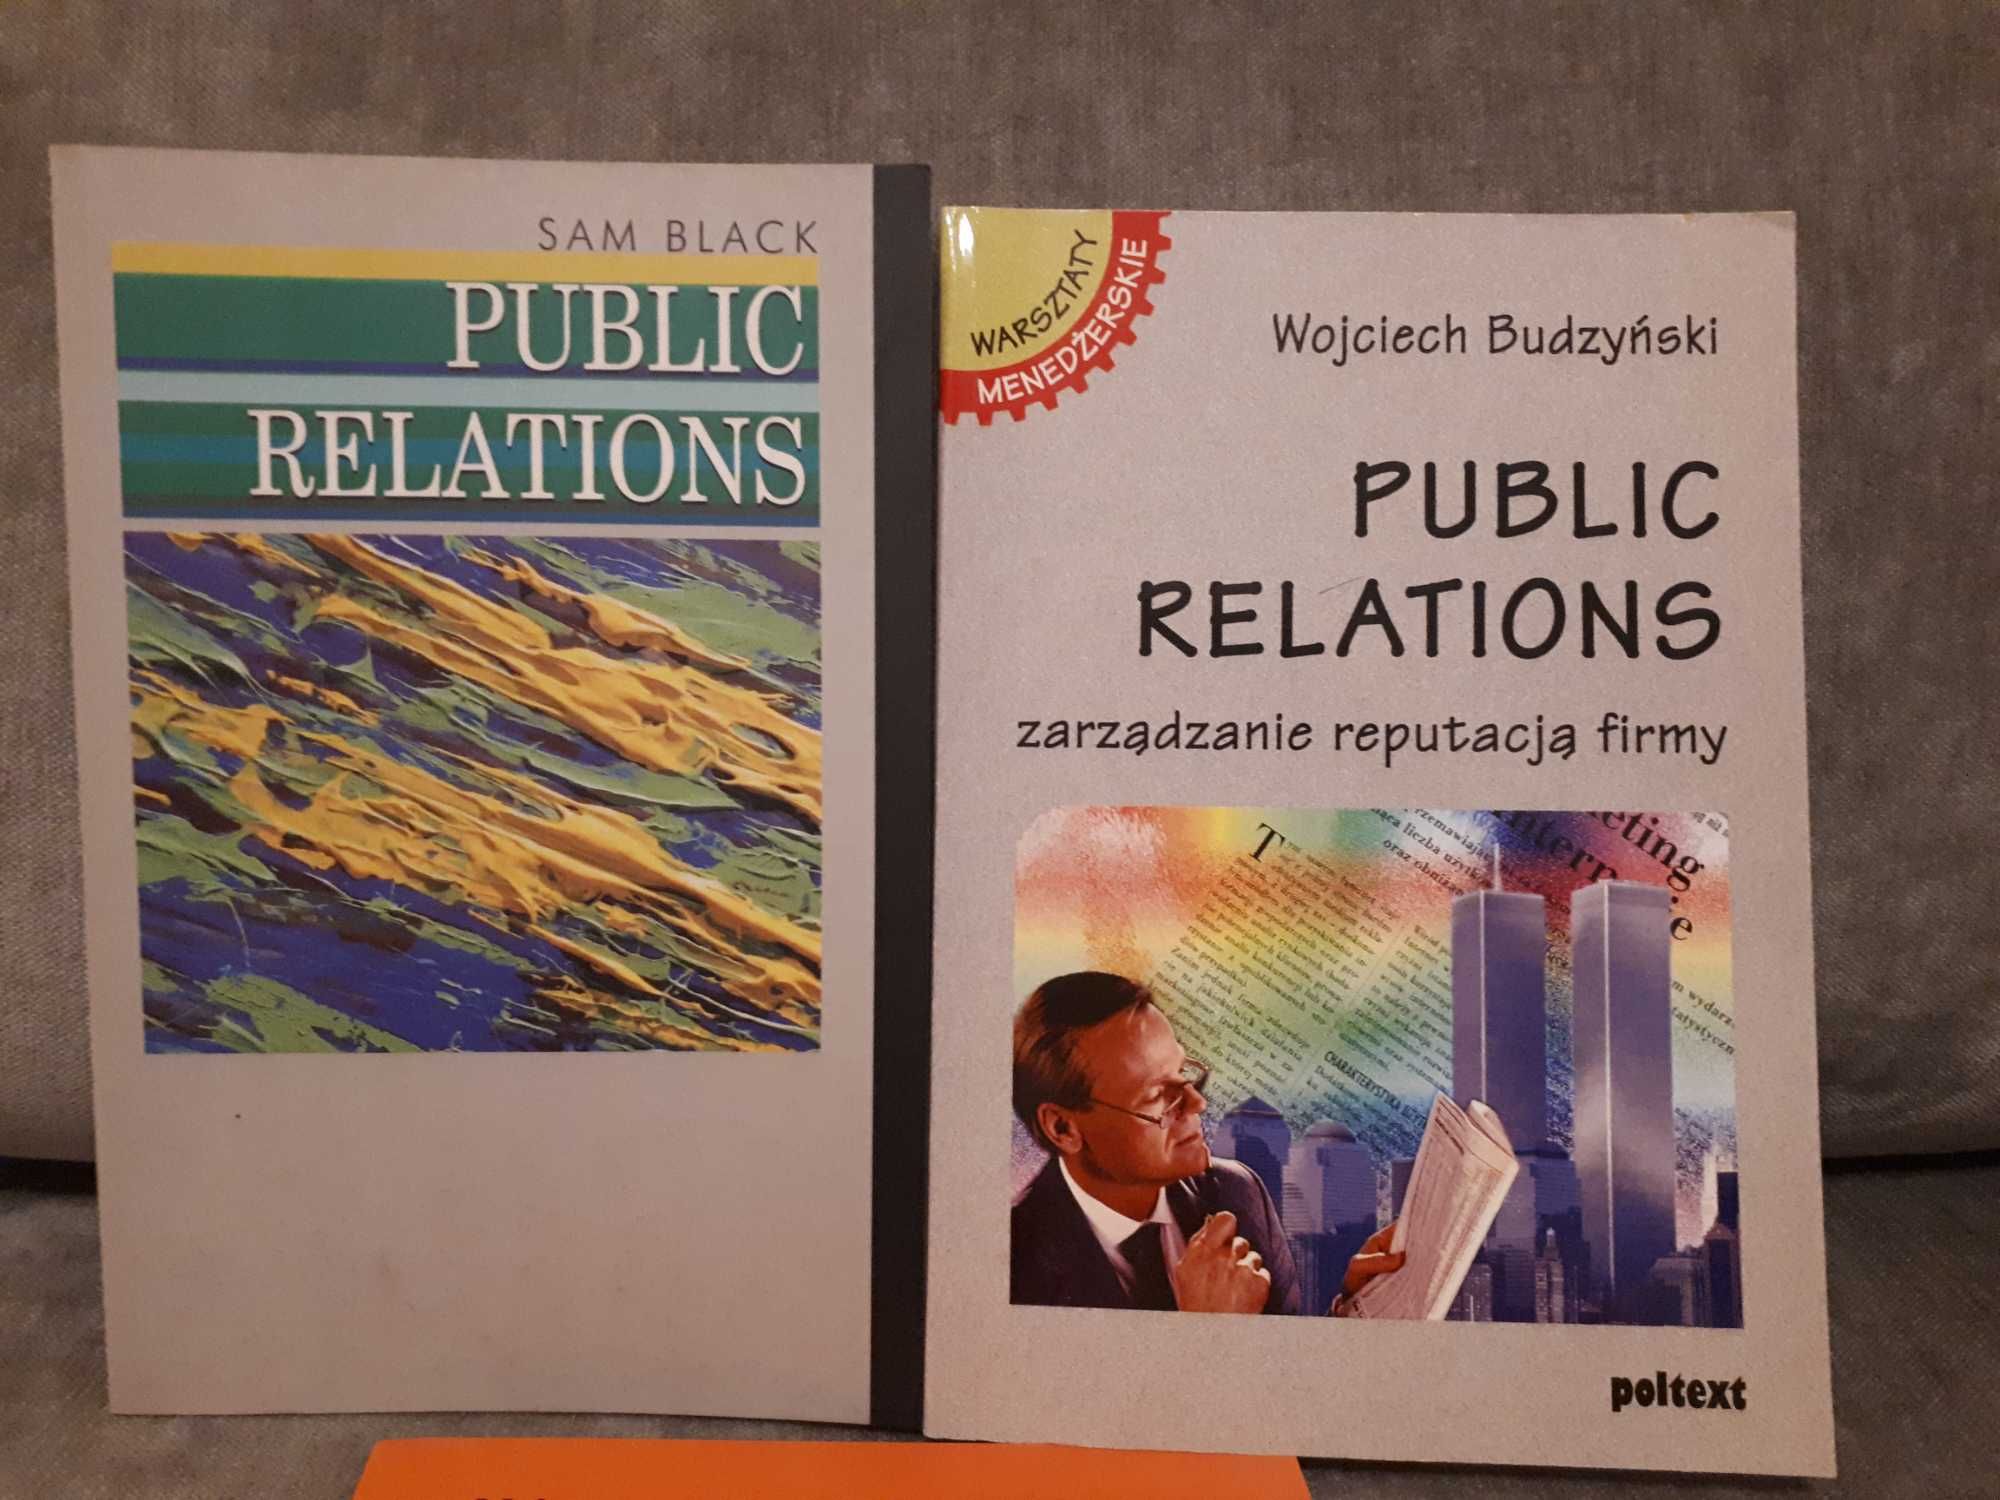 Public Relations - warsztaty i Analiza tekstu